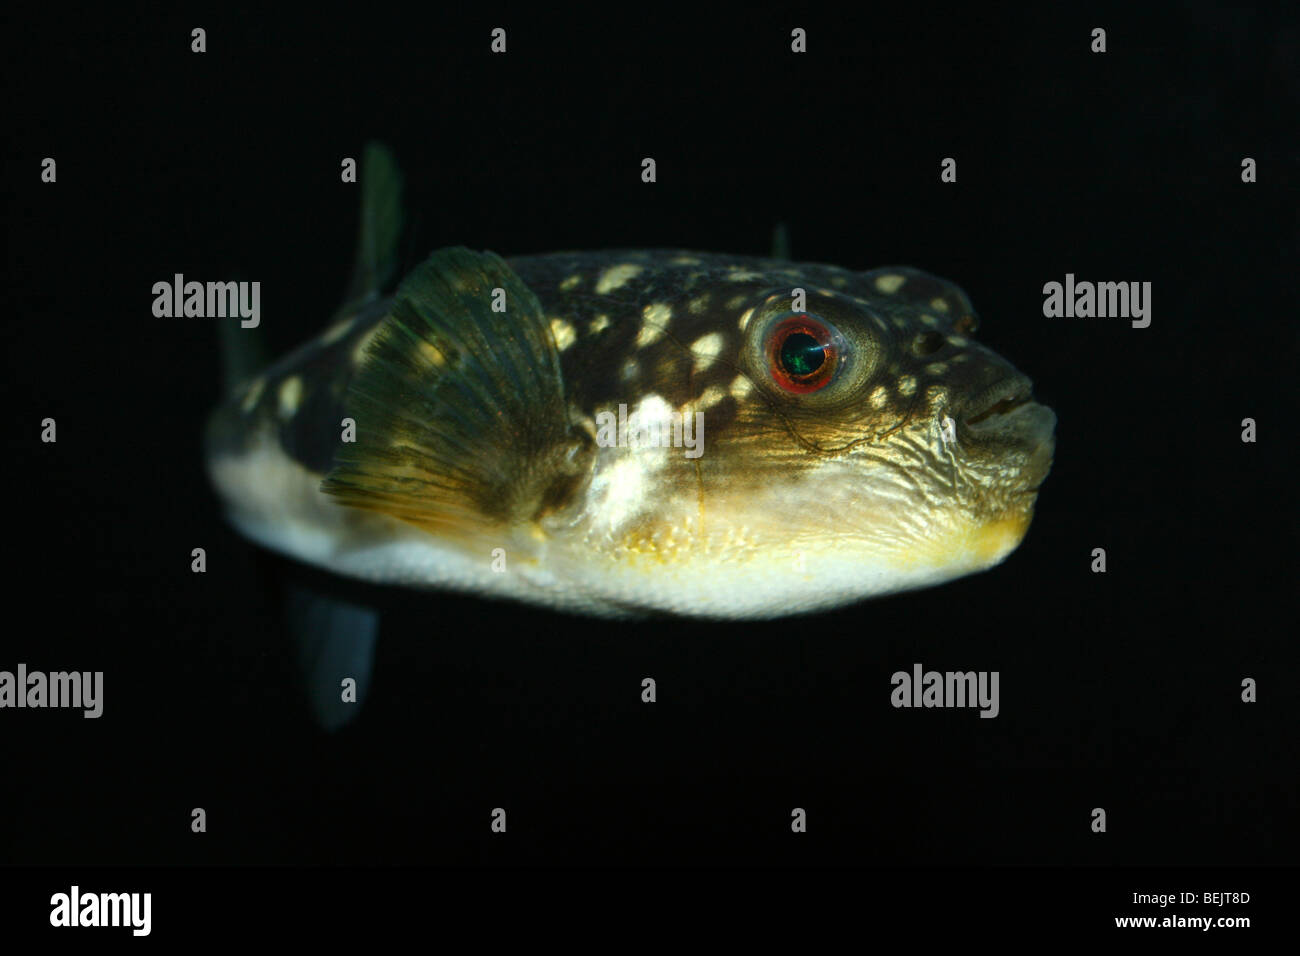 Böse Augen Kugelfisch Fisch Amblyrhynchotes Honckenii genommen im Two Oceans Aquarium, Kapstadt, Südafrika Stockfoto